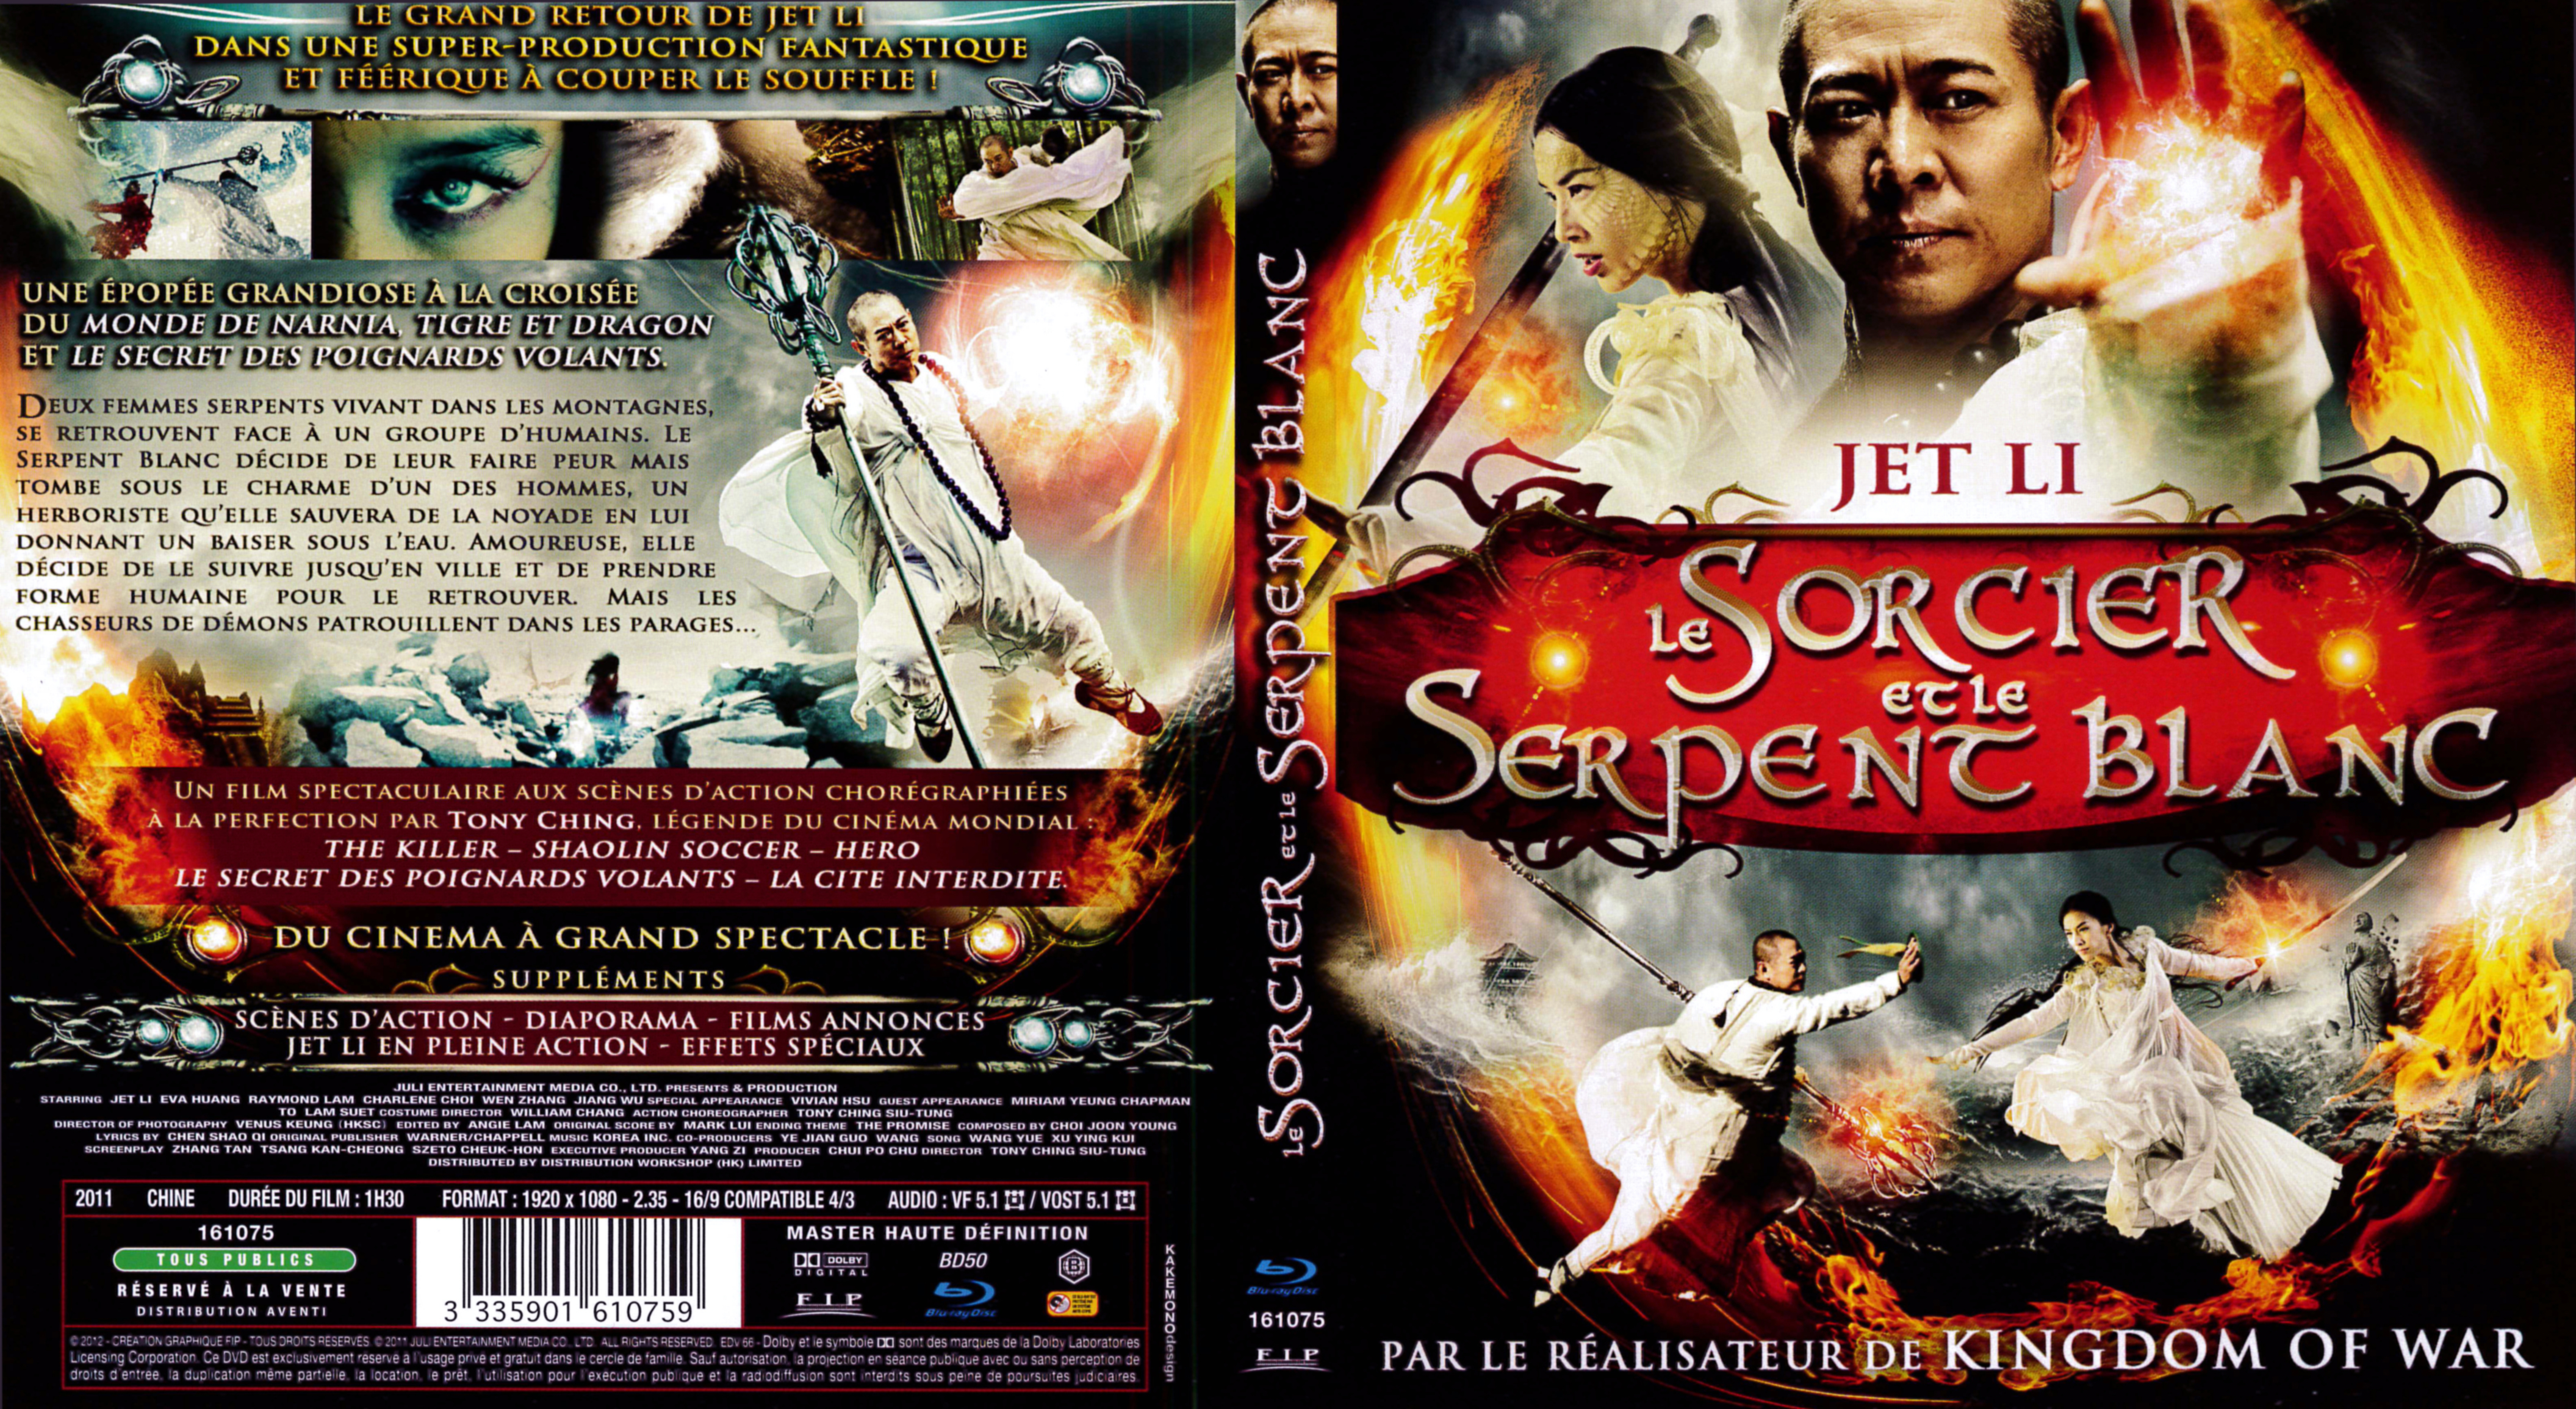 Jaquette DVD Le Sorcier et le serpent blanc (BLU-RAY)